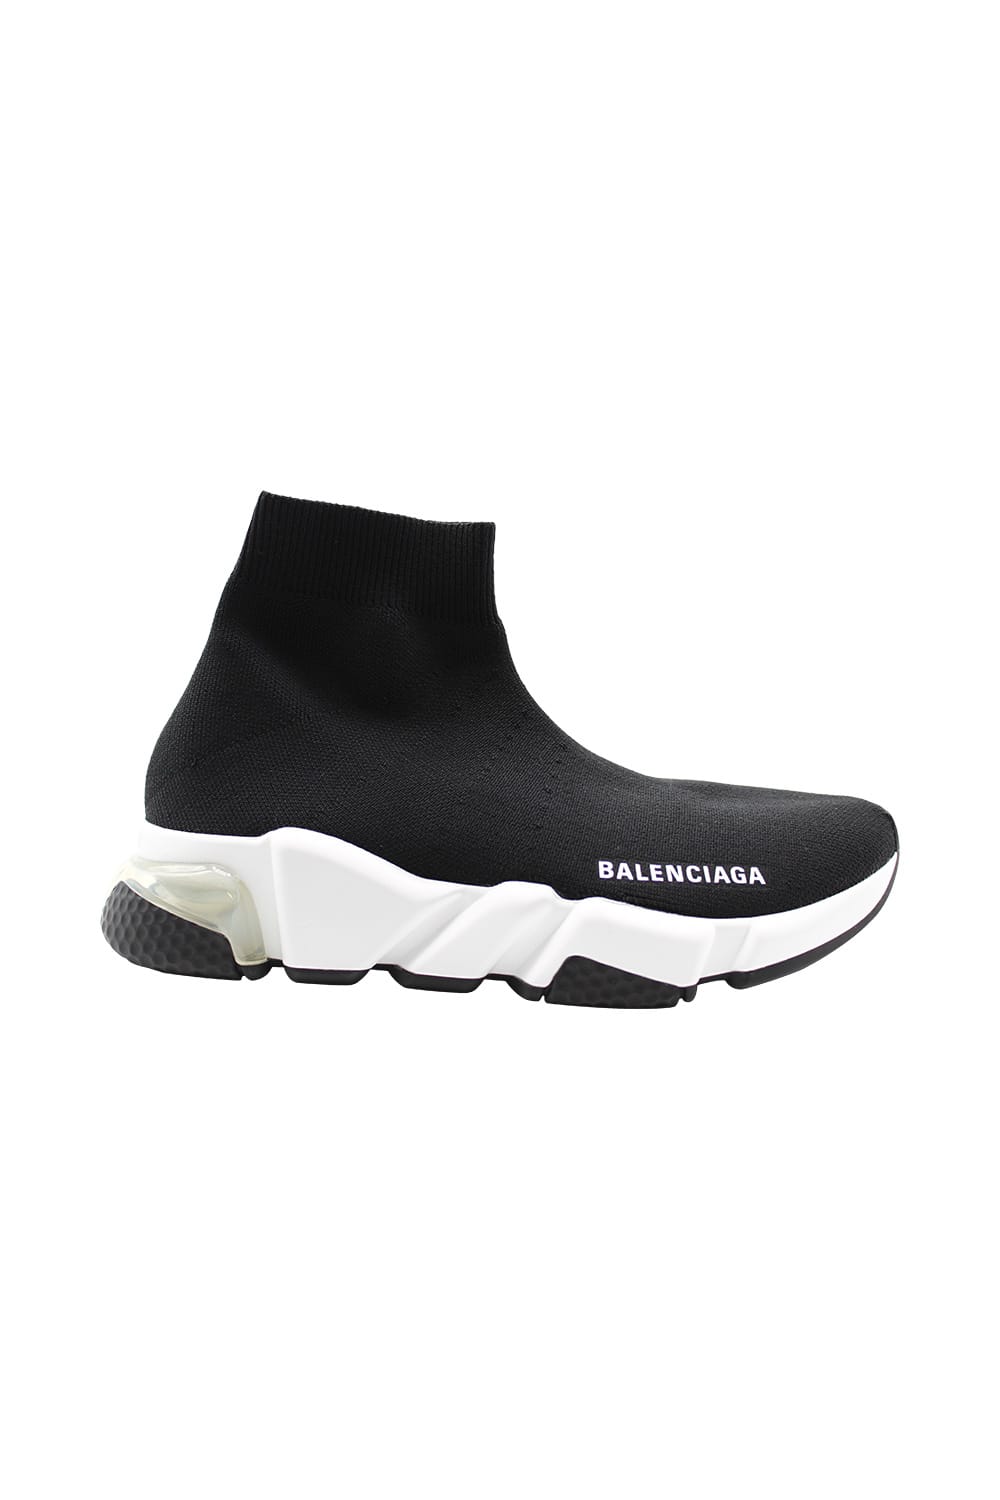 Balenciaga Speedextra Light Sneaker